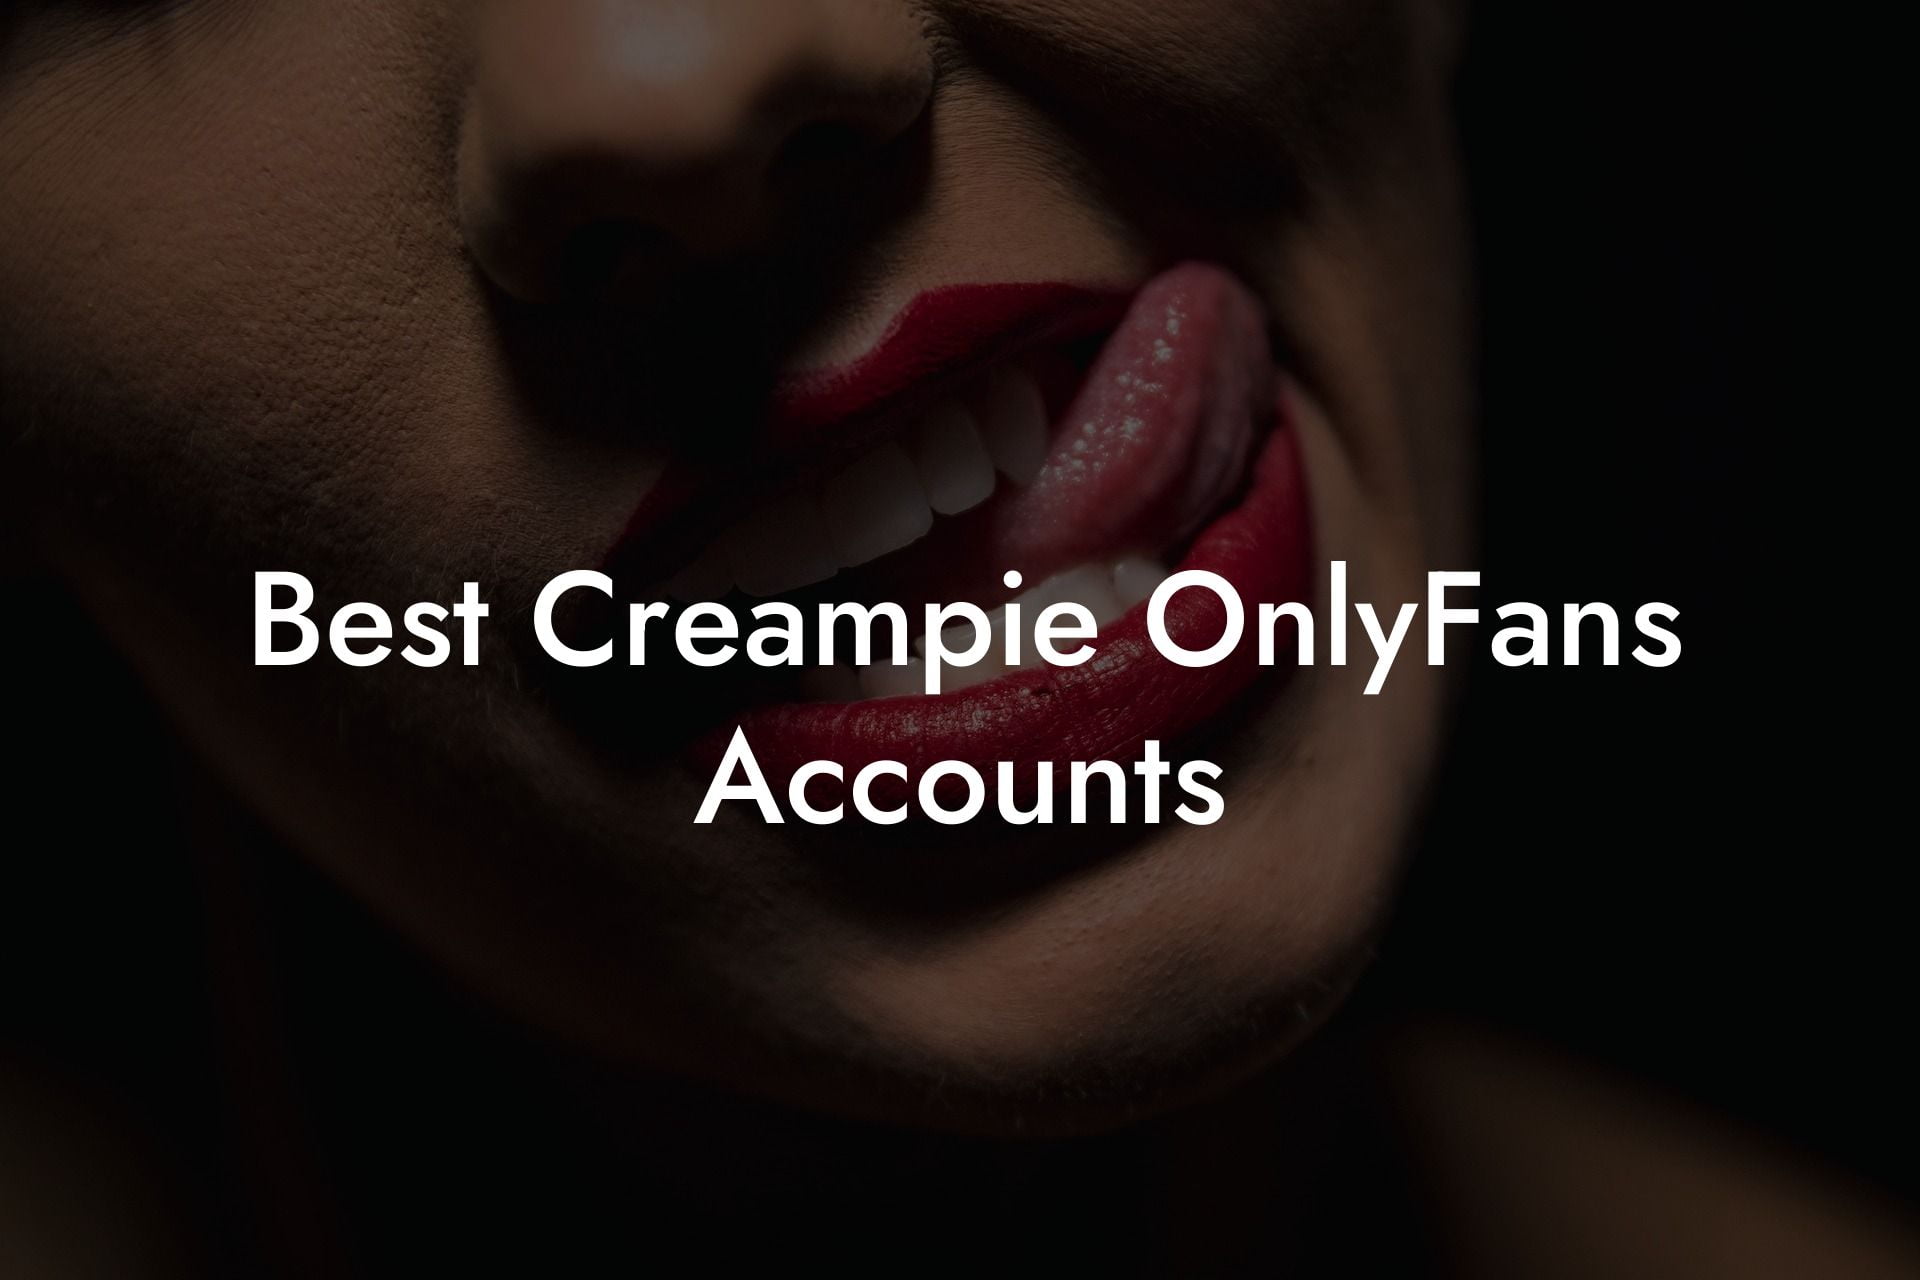 Best Creampie OnlyFans Accounts